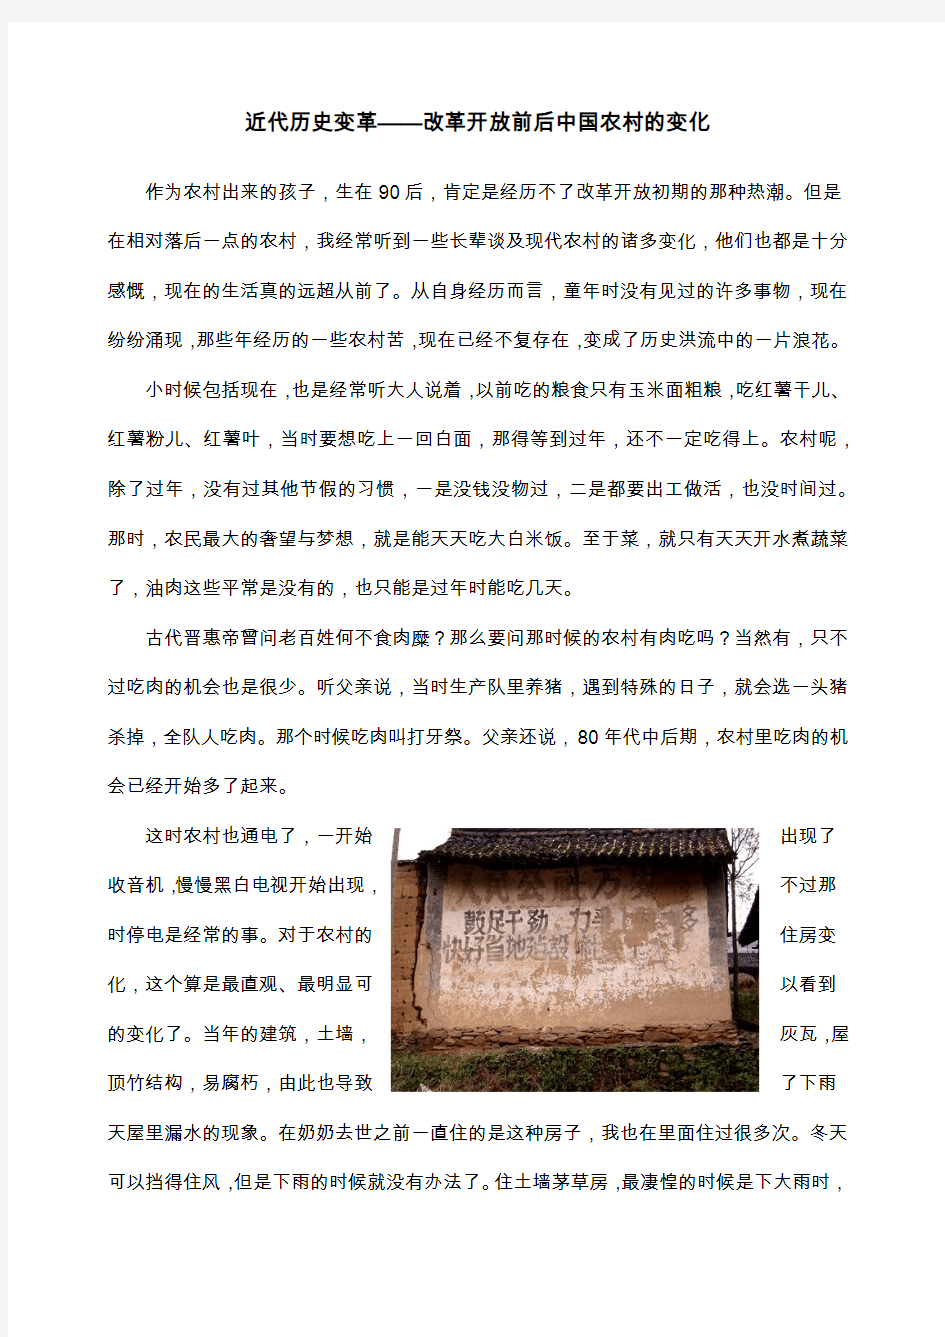 近代历史变革——改革开放前后中国农村的变化